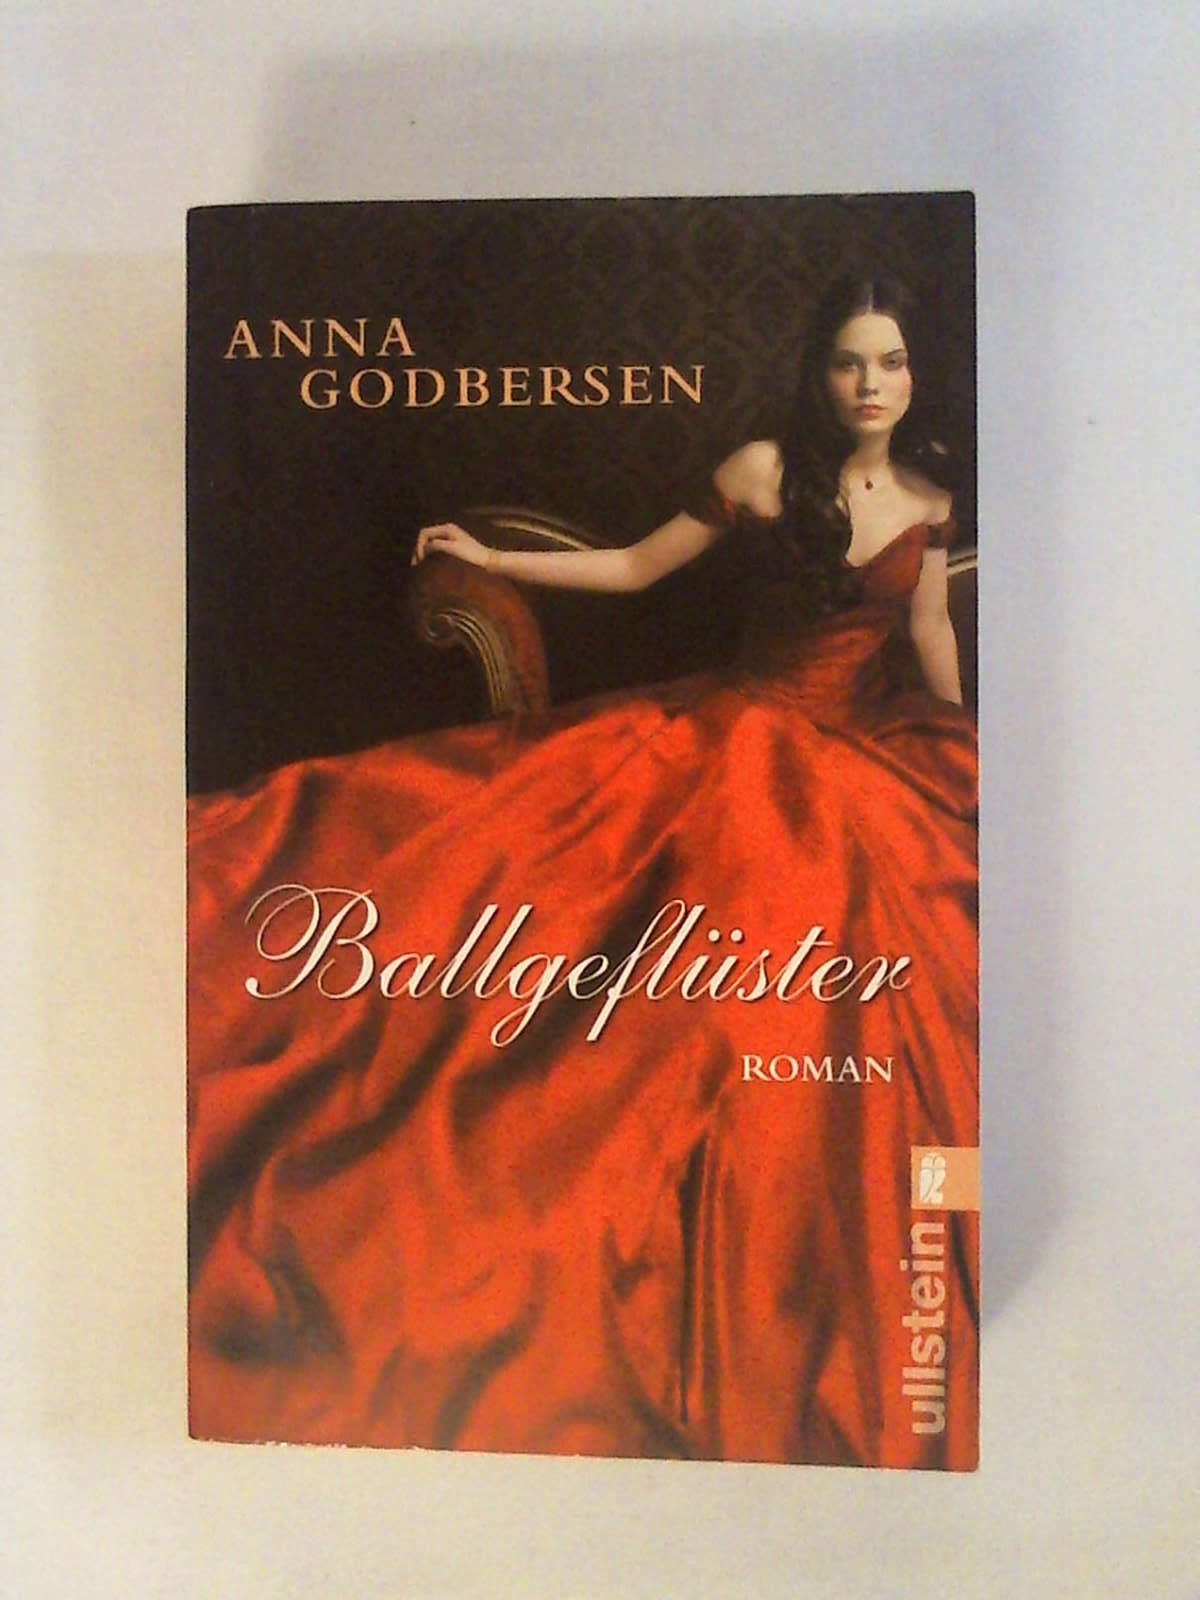 Die Prinzessinen von New York - Ballgeflüster (Die Prinzessinnen-von-New-York-Saga, Band 2) - Anna Godbersen